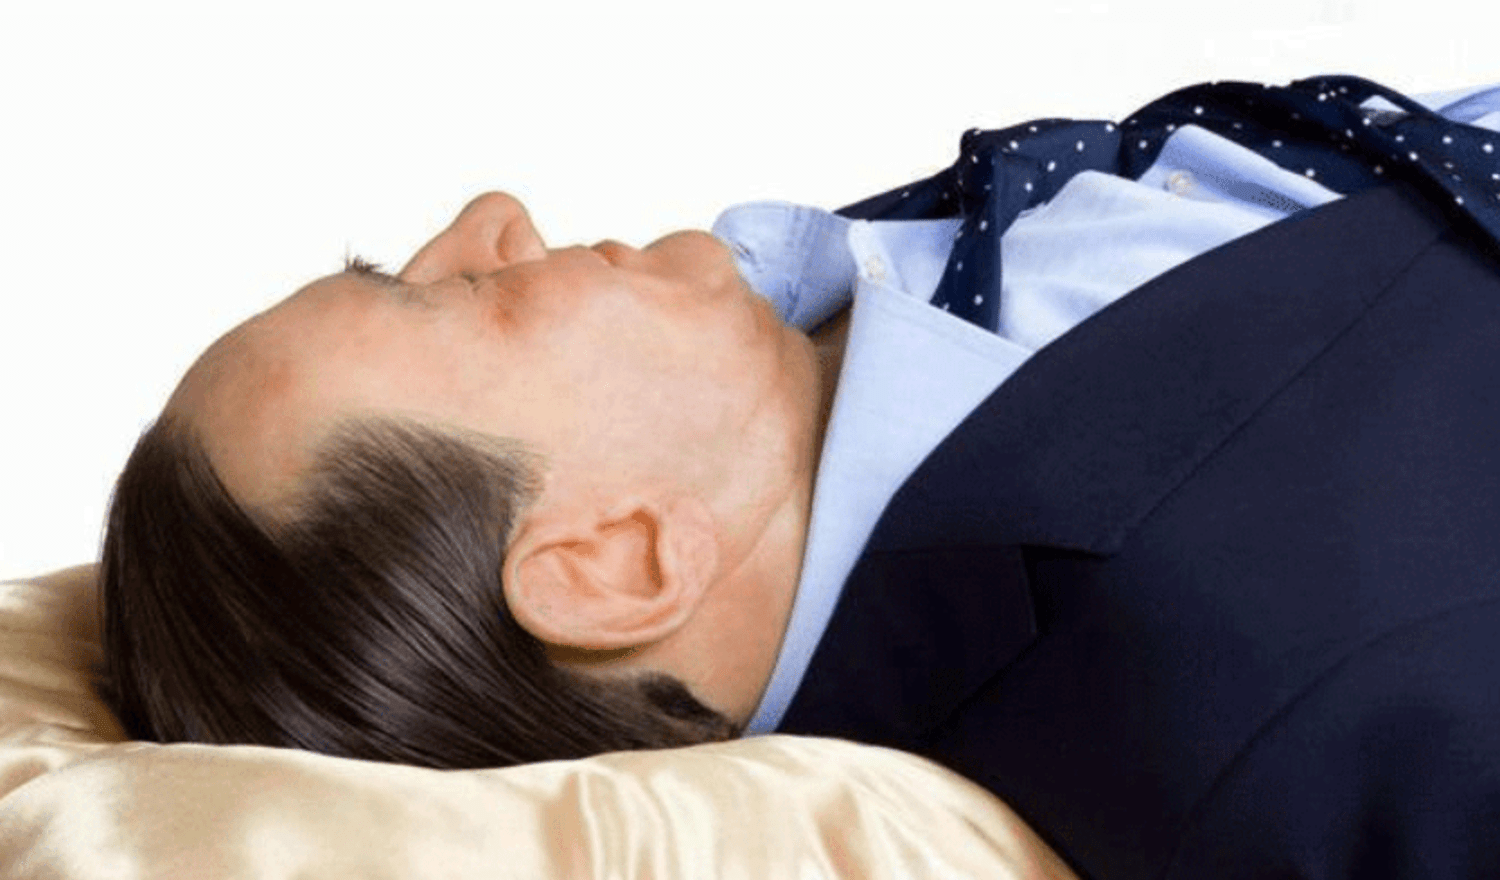 Приснился спящий мужчина. Оторванная голова близкого во сне. Берлускони шуточная картинка мёртвого Берлускони в гробу.